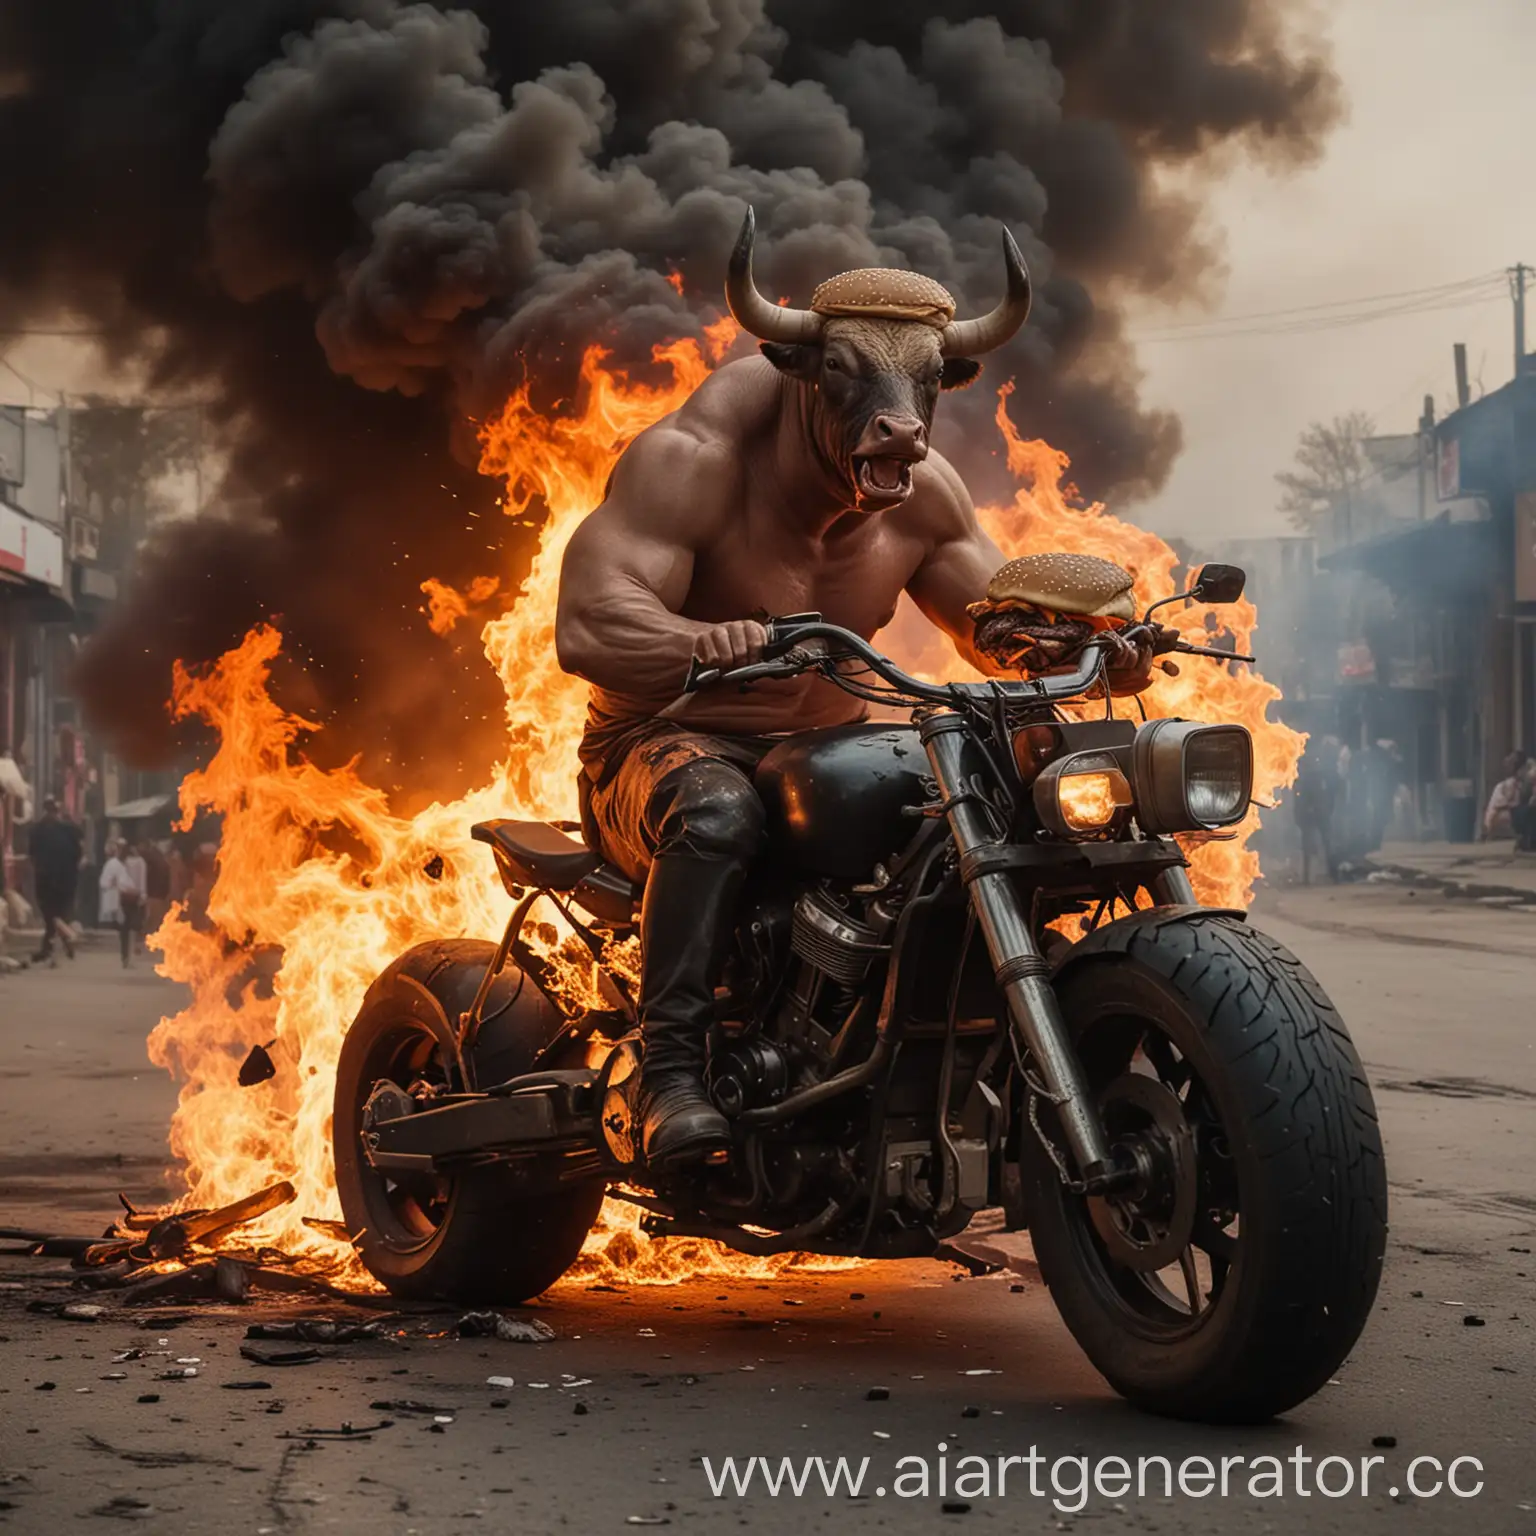 брутальный бык на мотоцикле в огне с бургером
